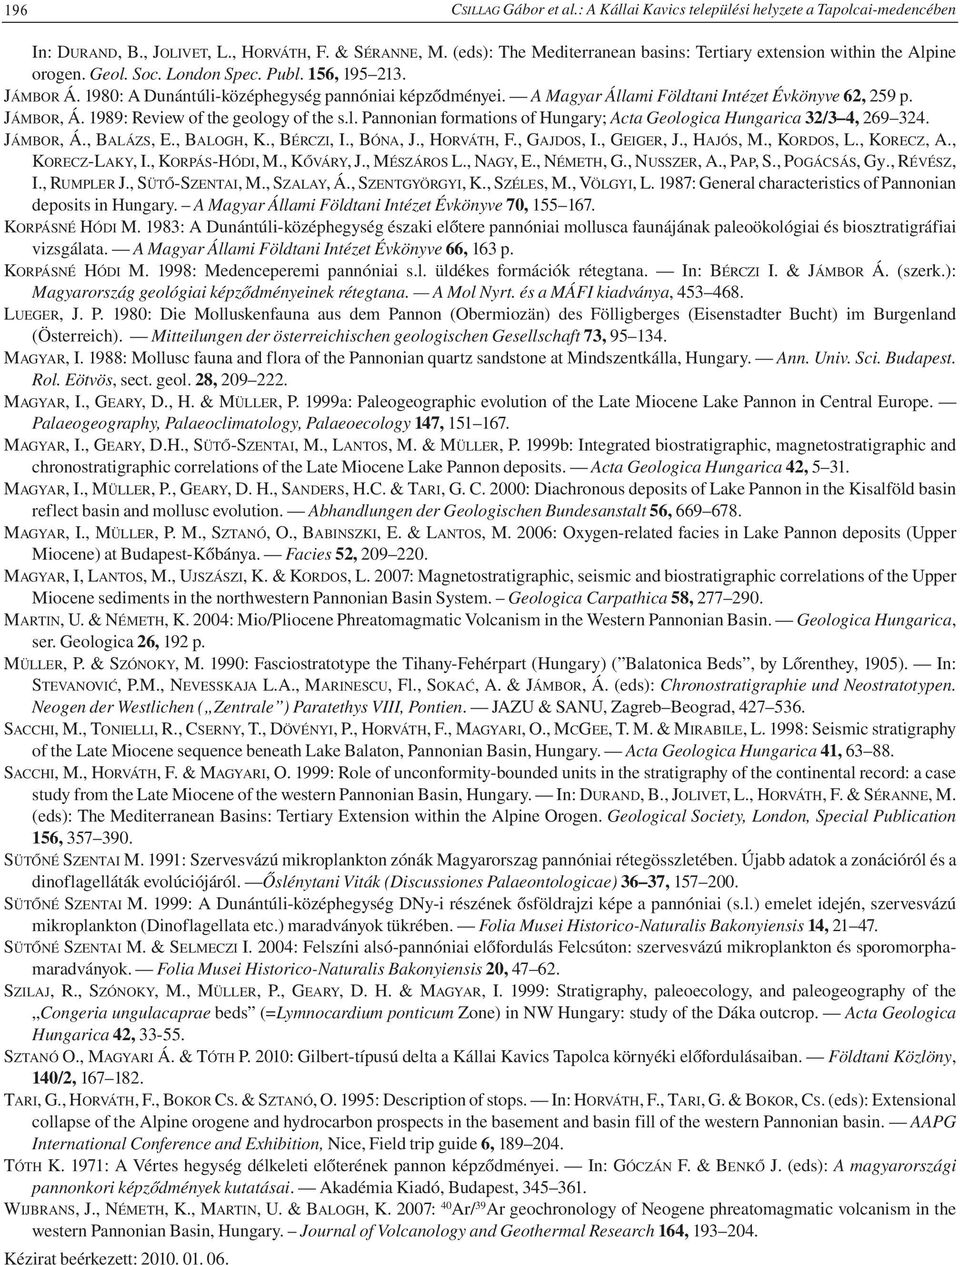 A Magyar Állami Földtani Intézet Évkönyve 62, 259 p. JÁMBOR, Á. 1989: Review of the geology of the s.l. Pannonian formations of Hungary; Acta Geologica Hungarica 32/3 4, 269 324. JÁMBOR, Á., BALÁZS, E.